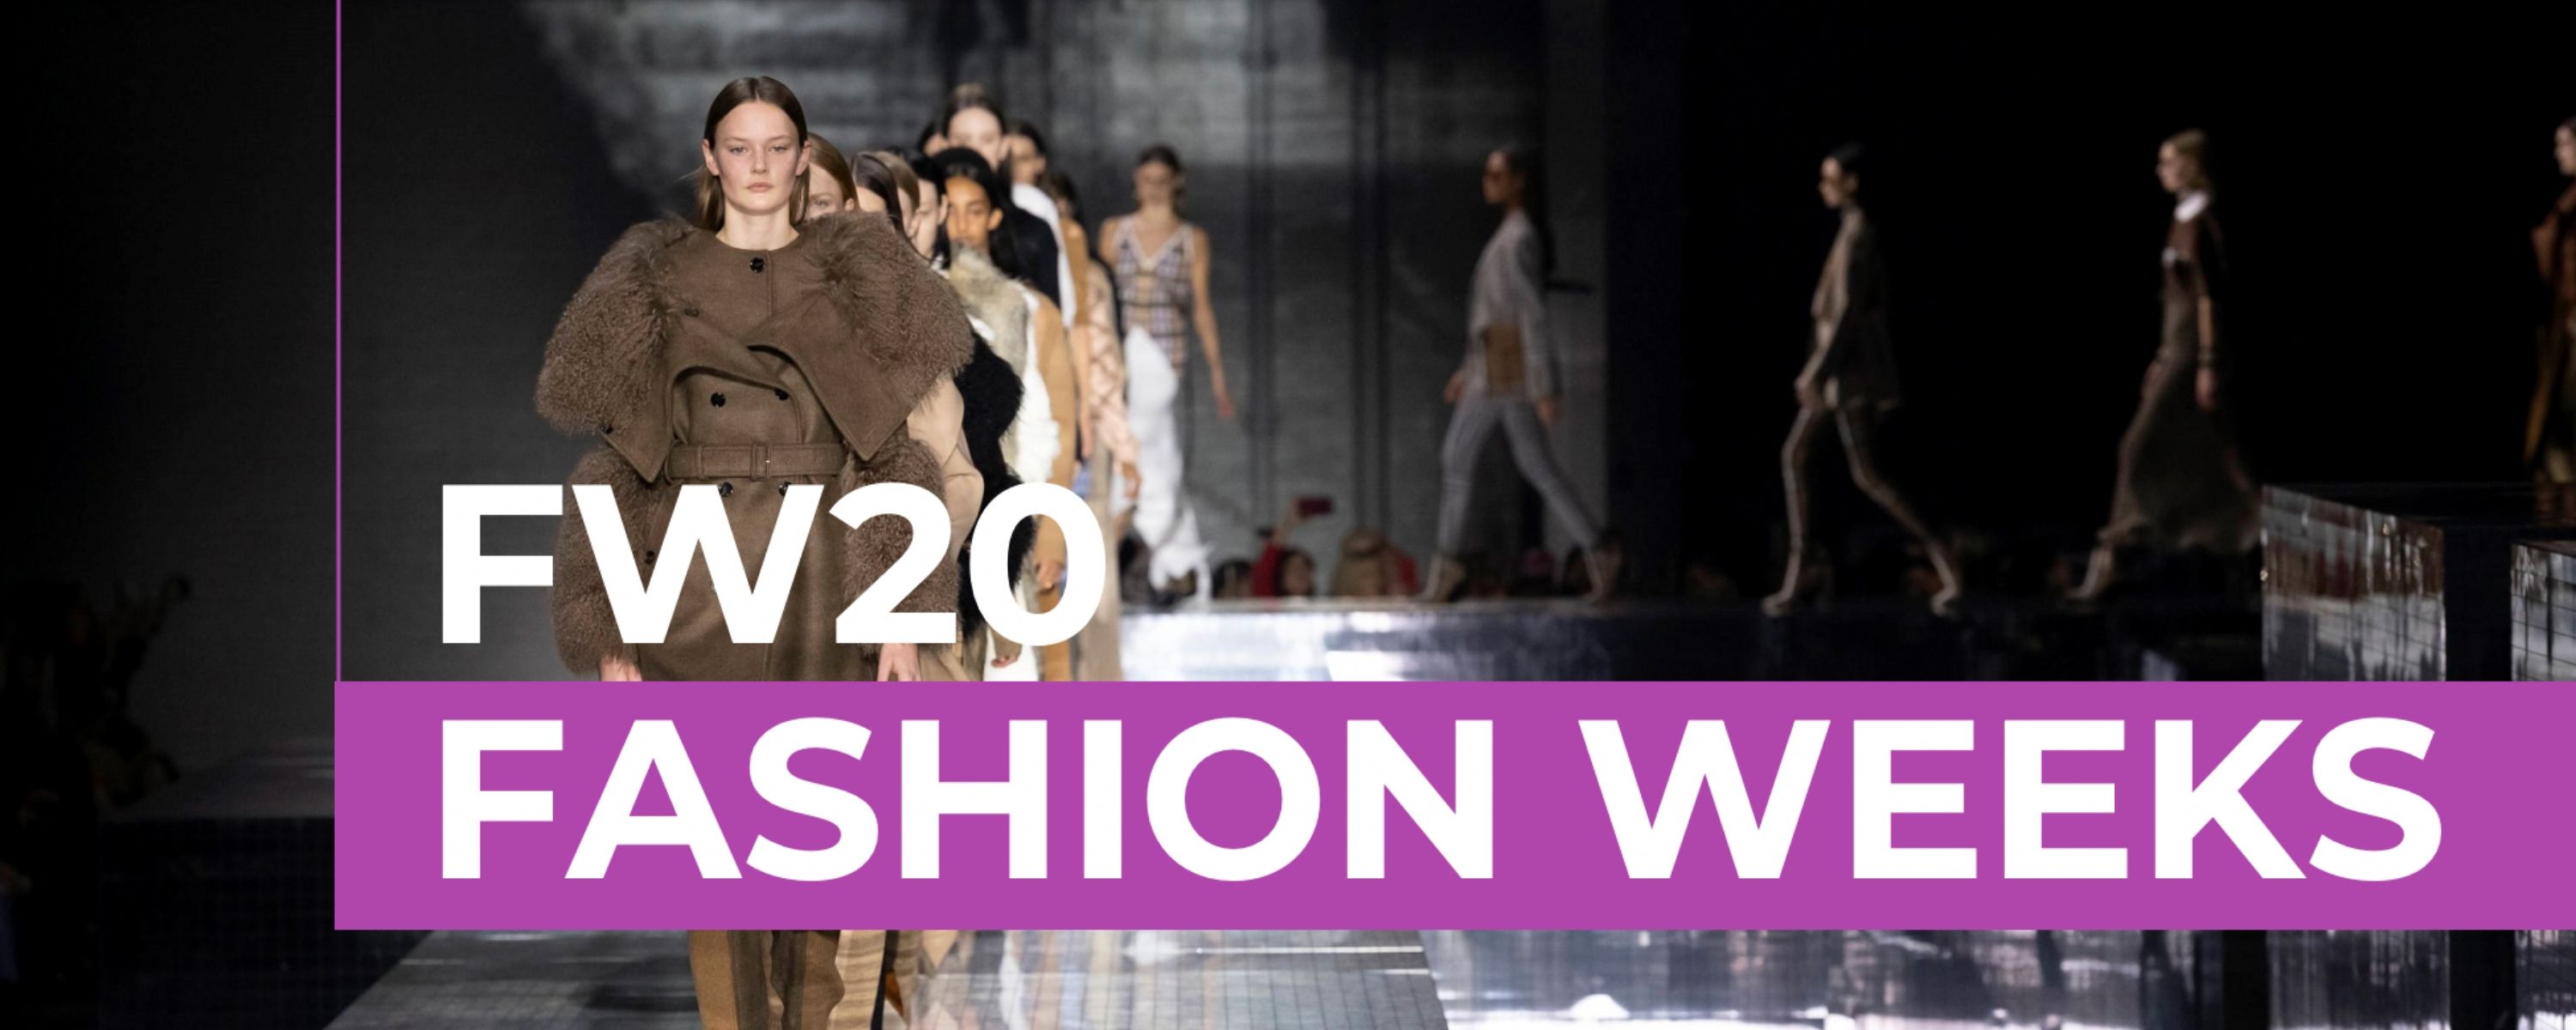 FW20 Fashion Weeks